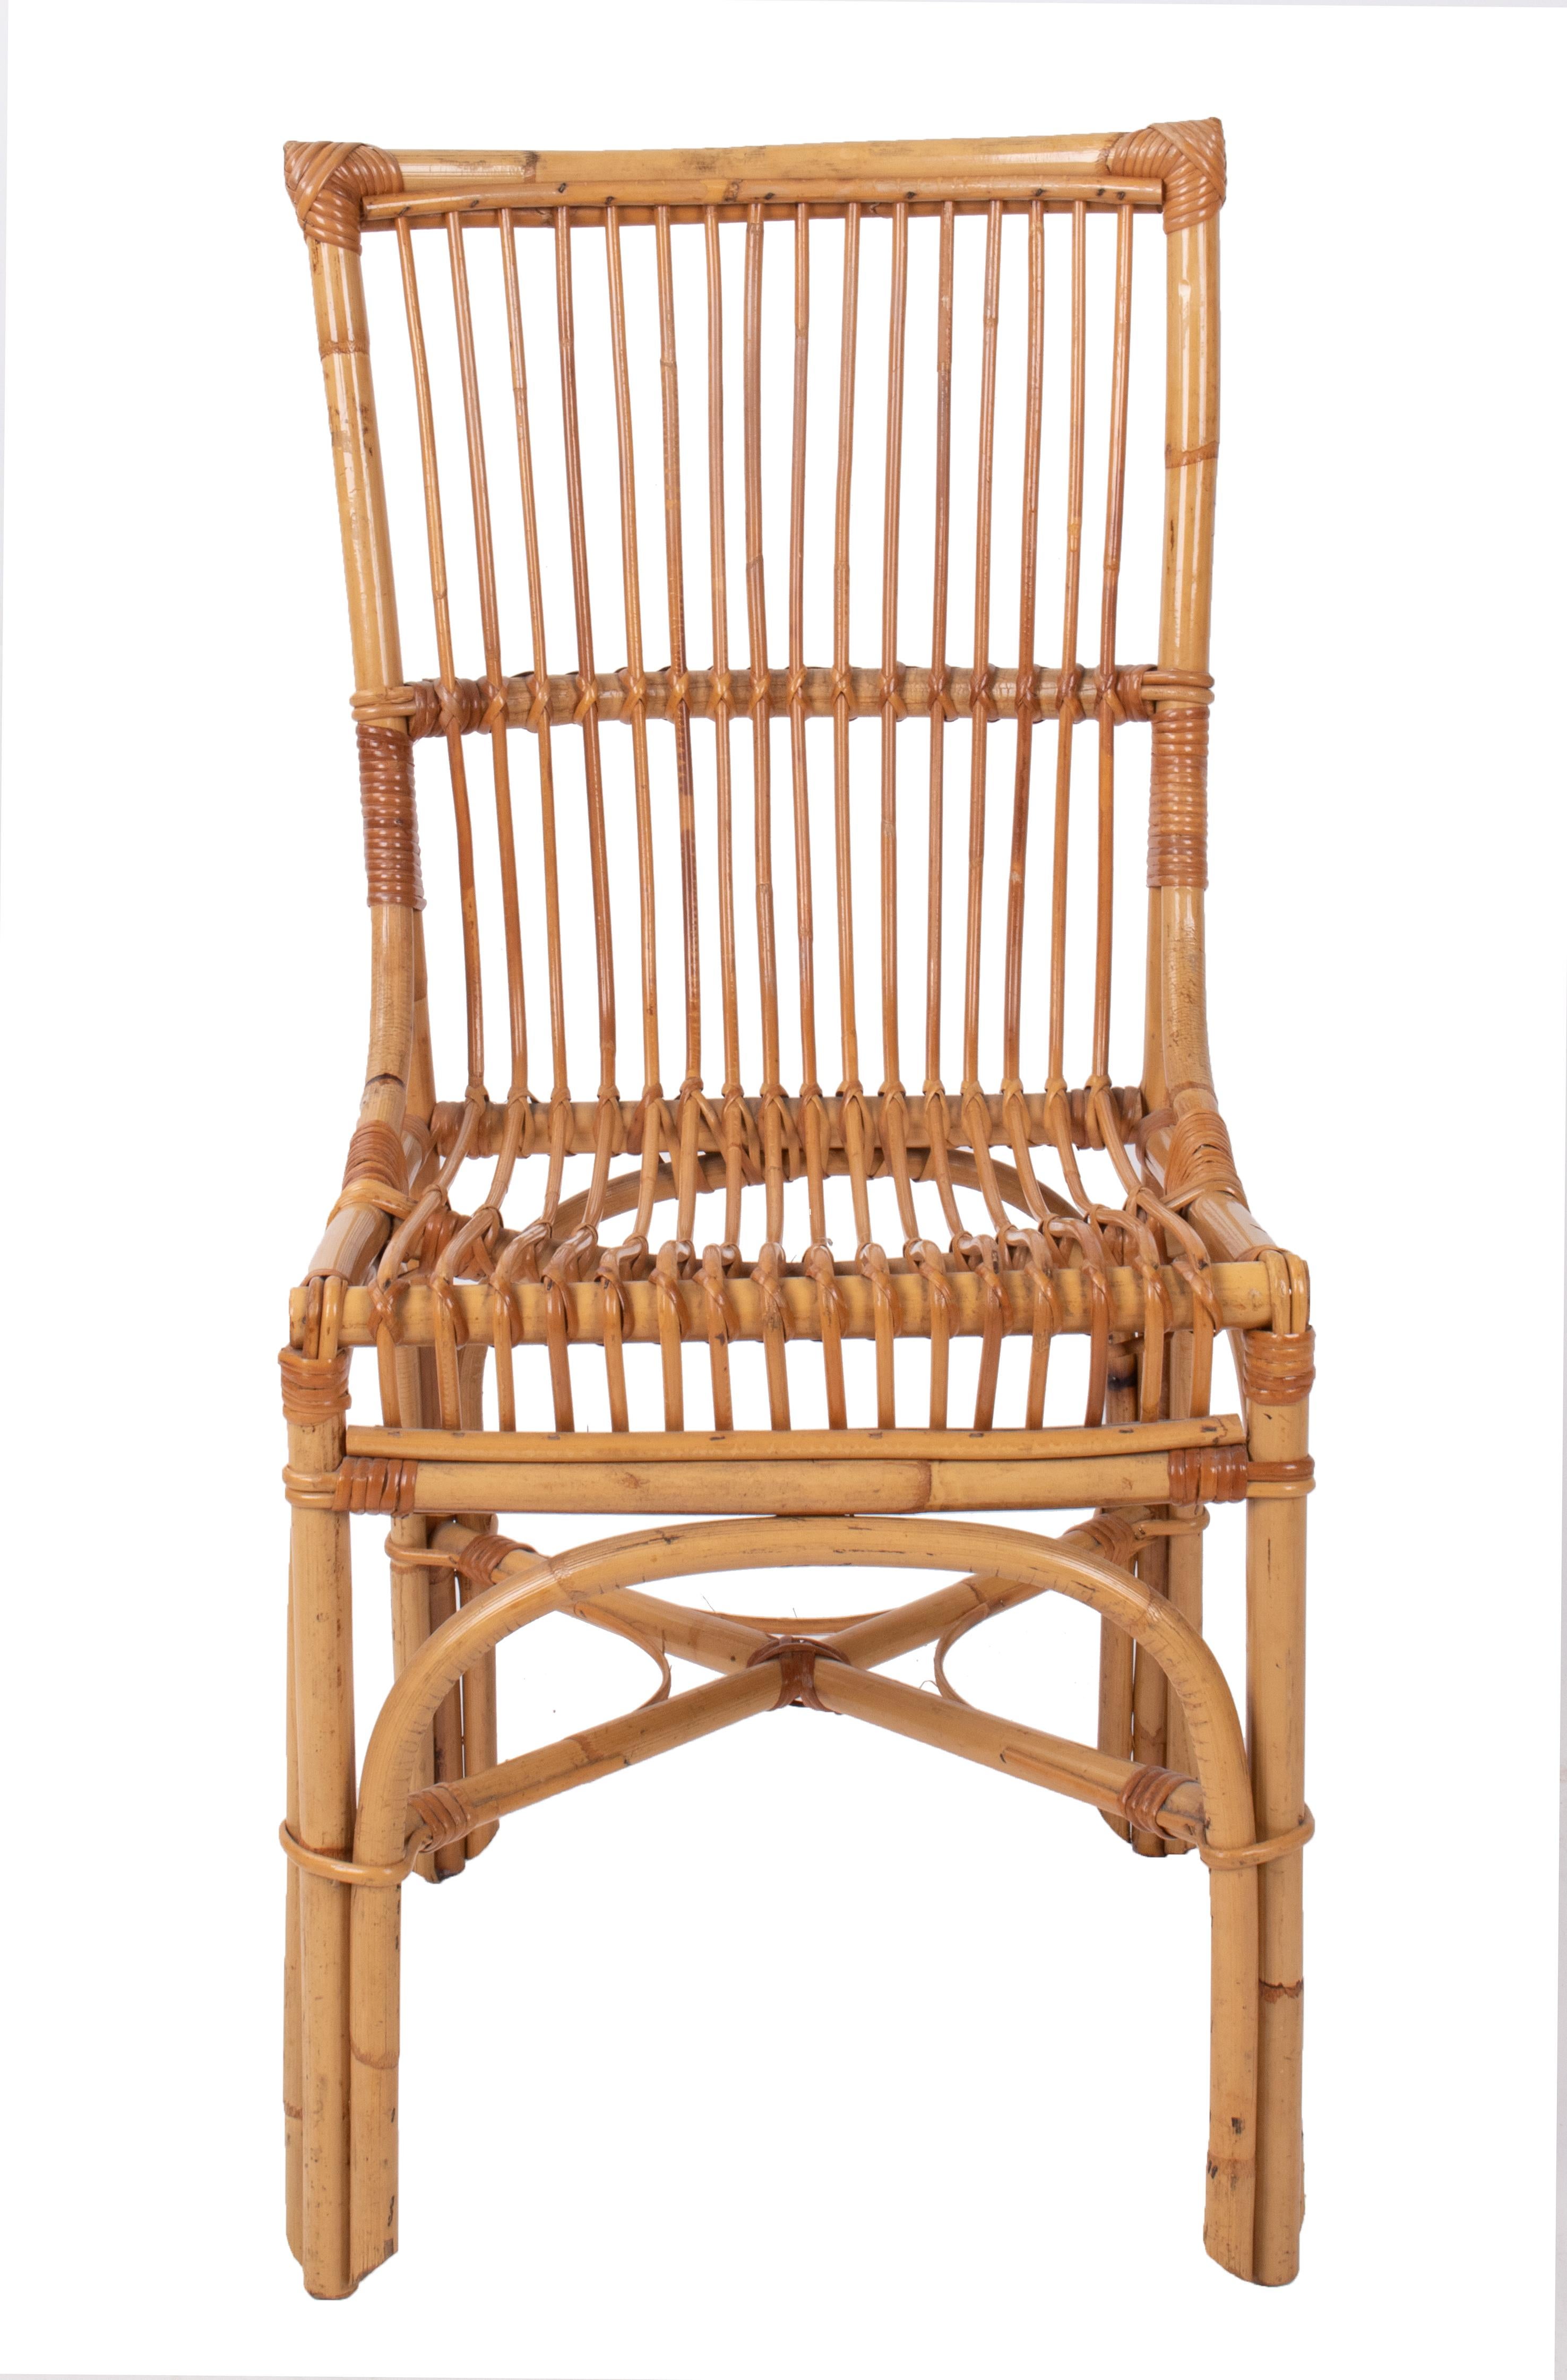 1970s Spanish bamboo chair.